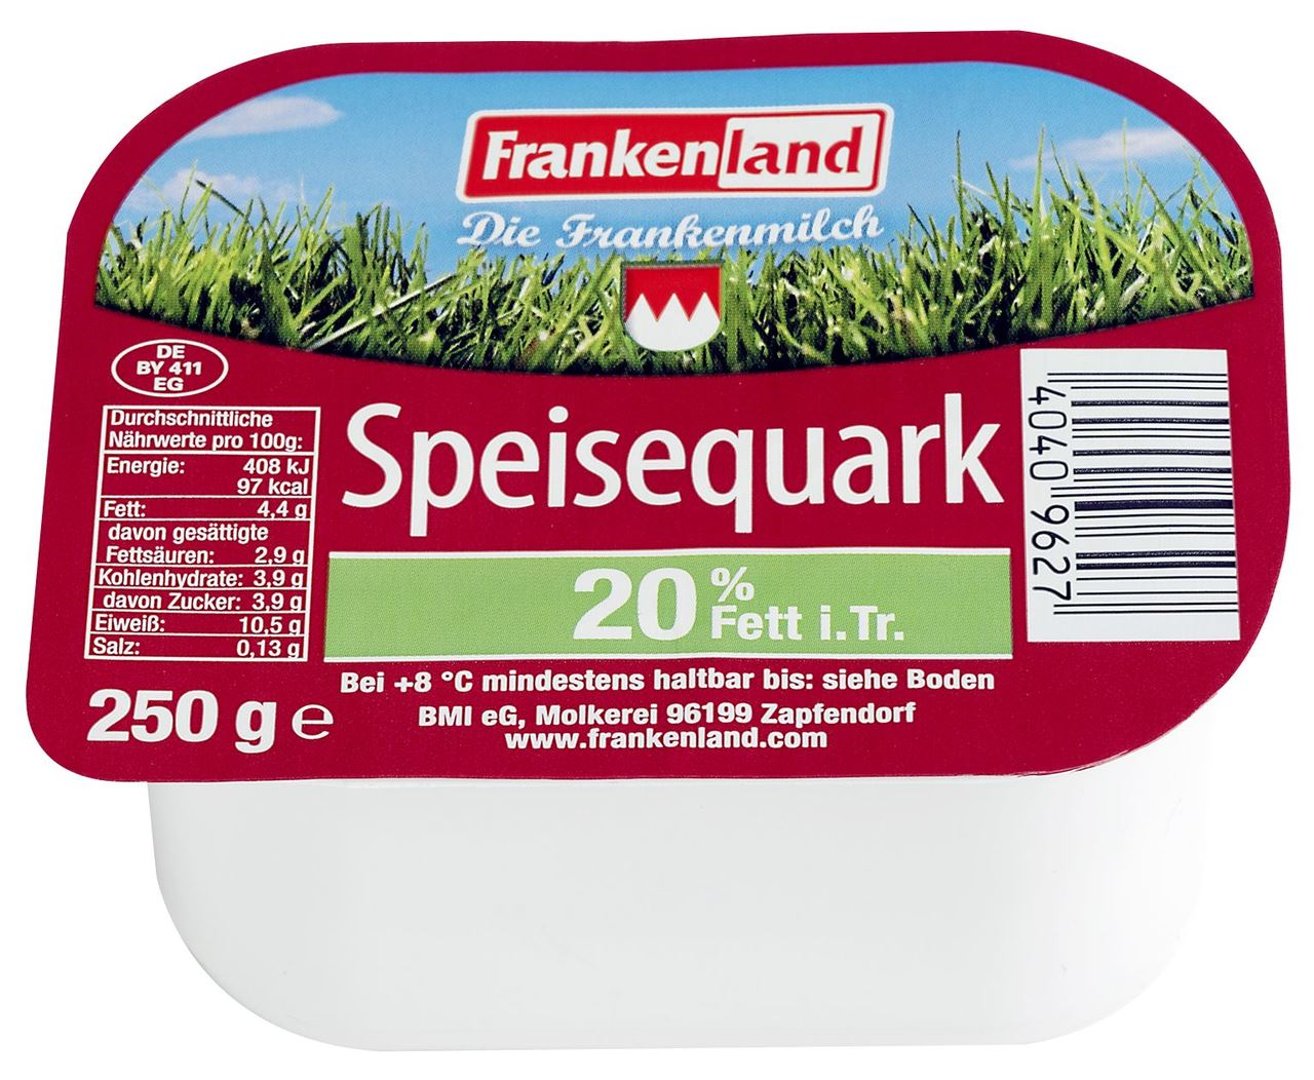 Frankenland - Speisequark 20 % Fett - 1 x 250 g Becher